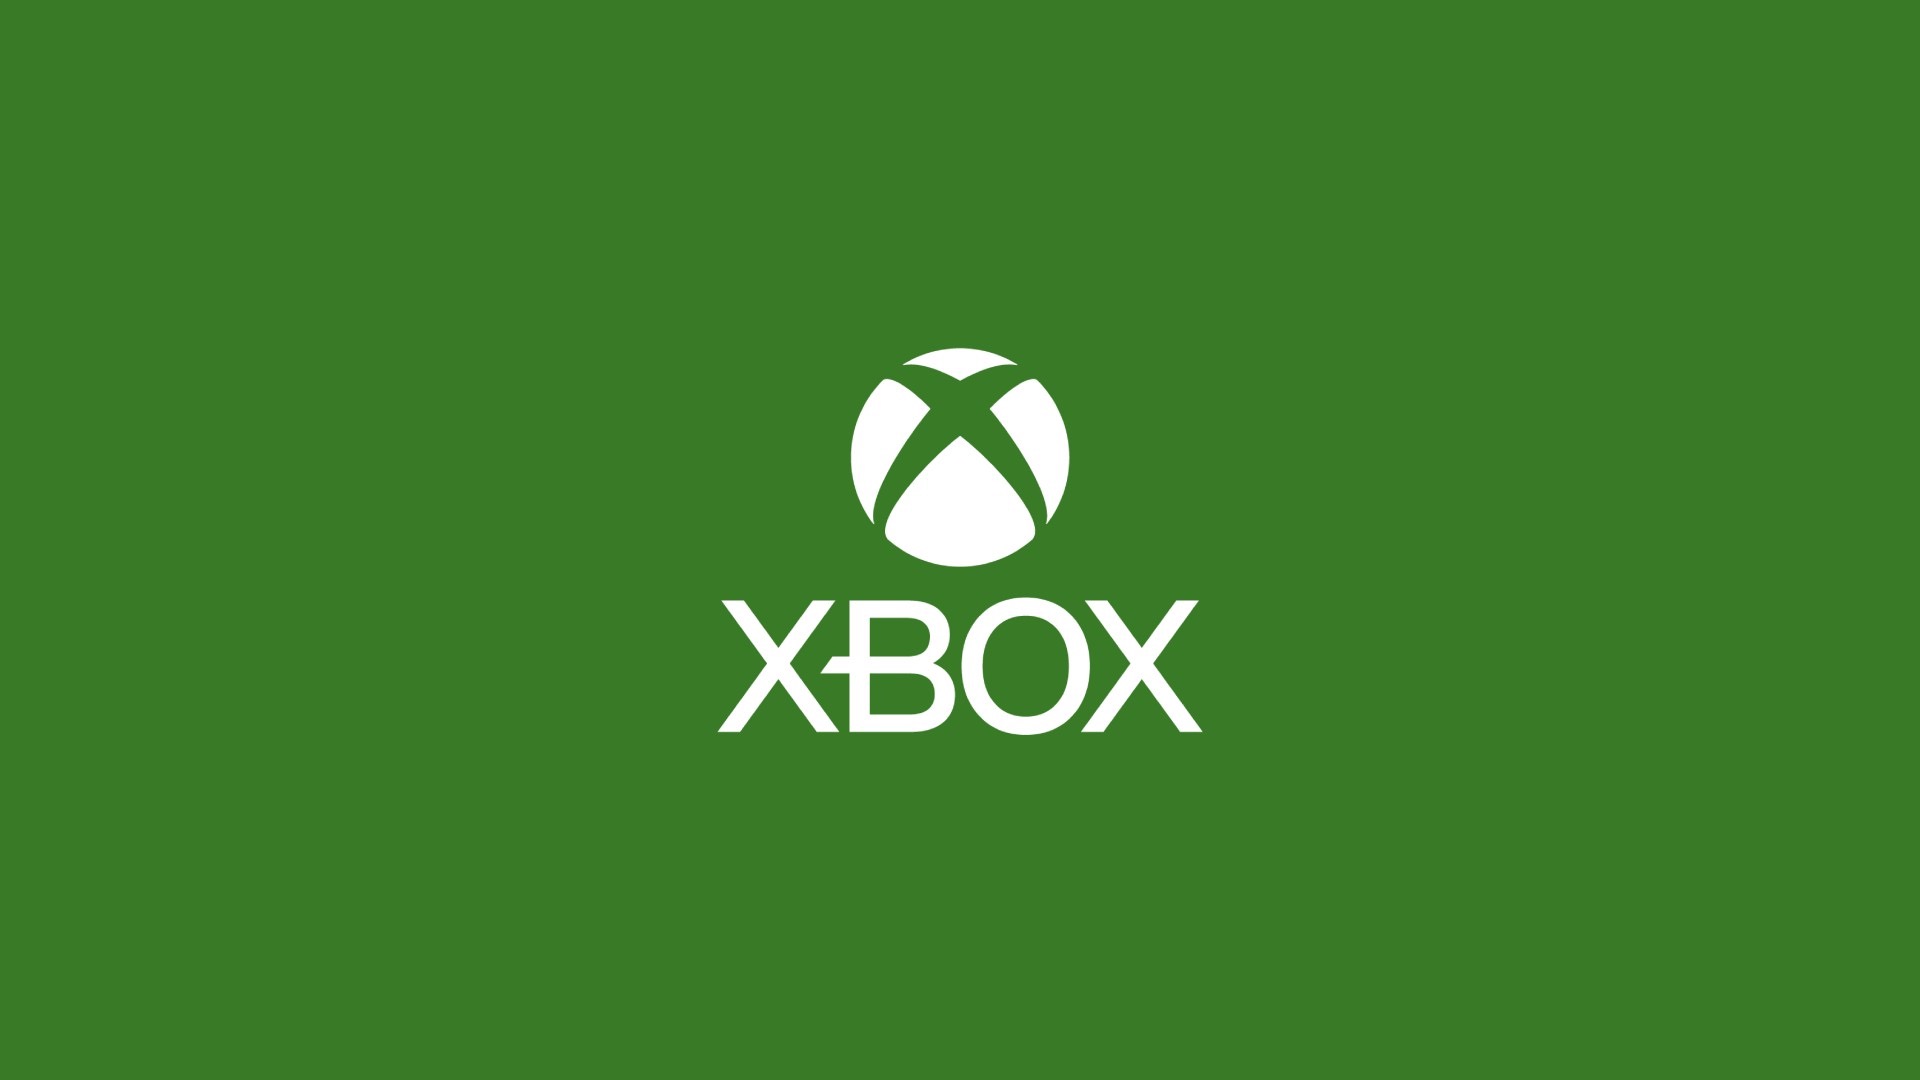 Команда Xbox анонсировала новую систему штрафов и блокировки игроков - она состоит из 8 ступеней: с сайта NEWXBOXONE.RU